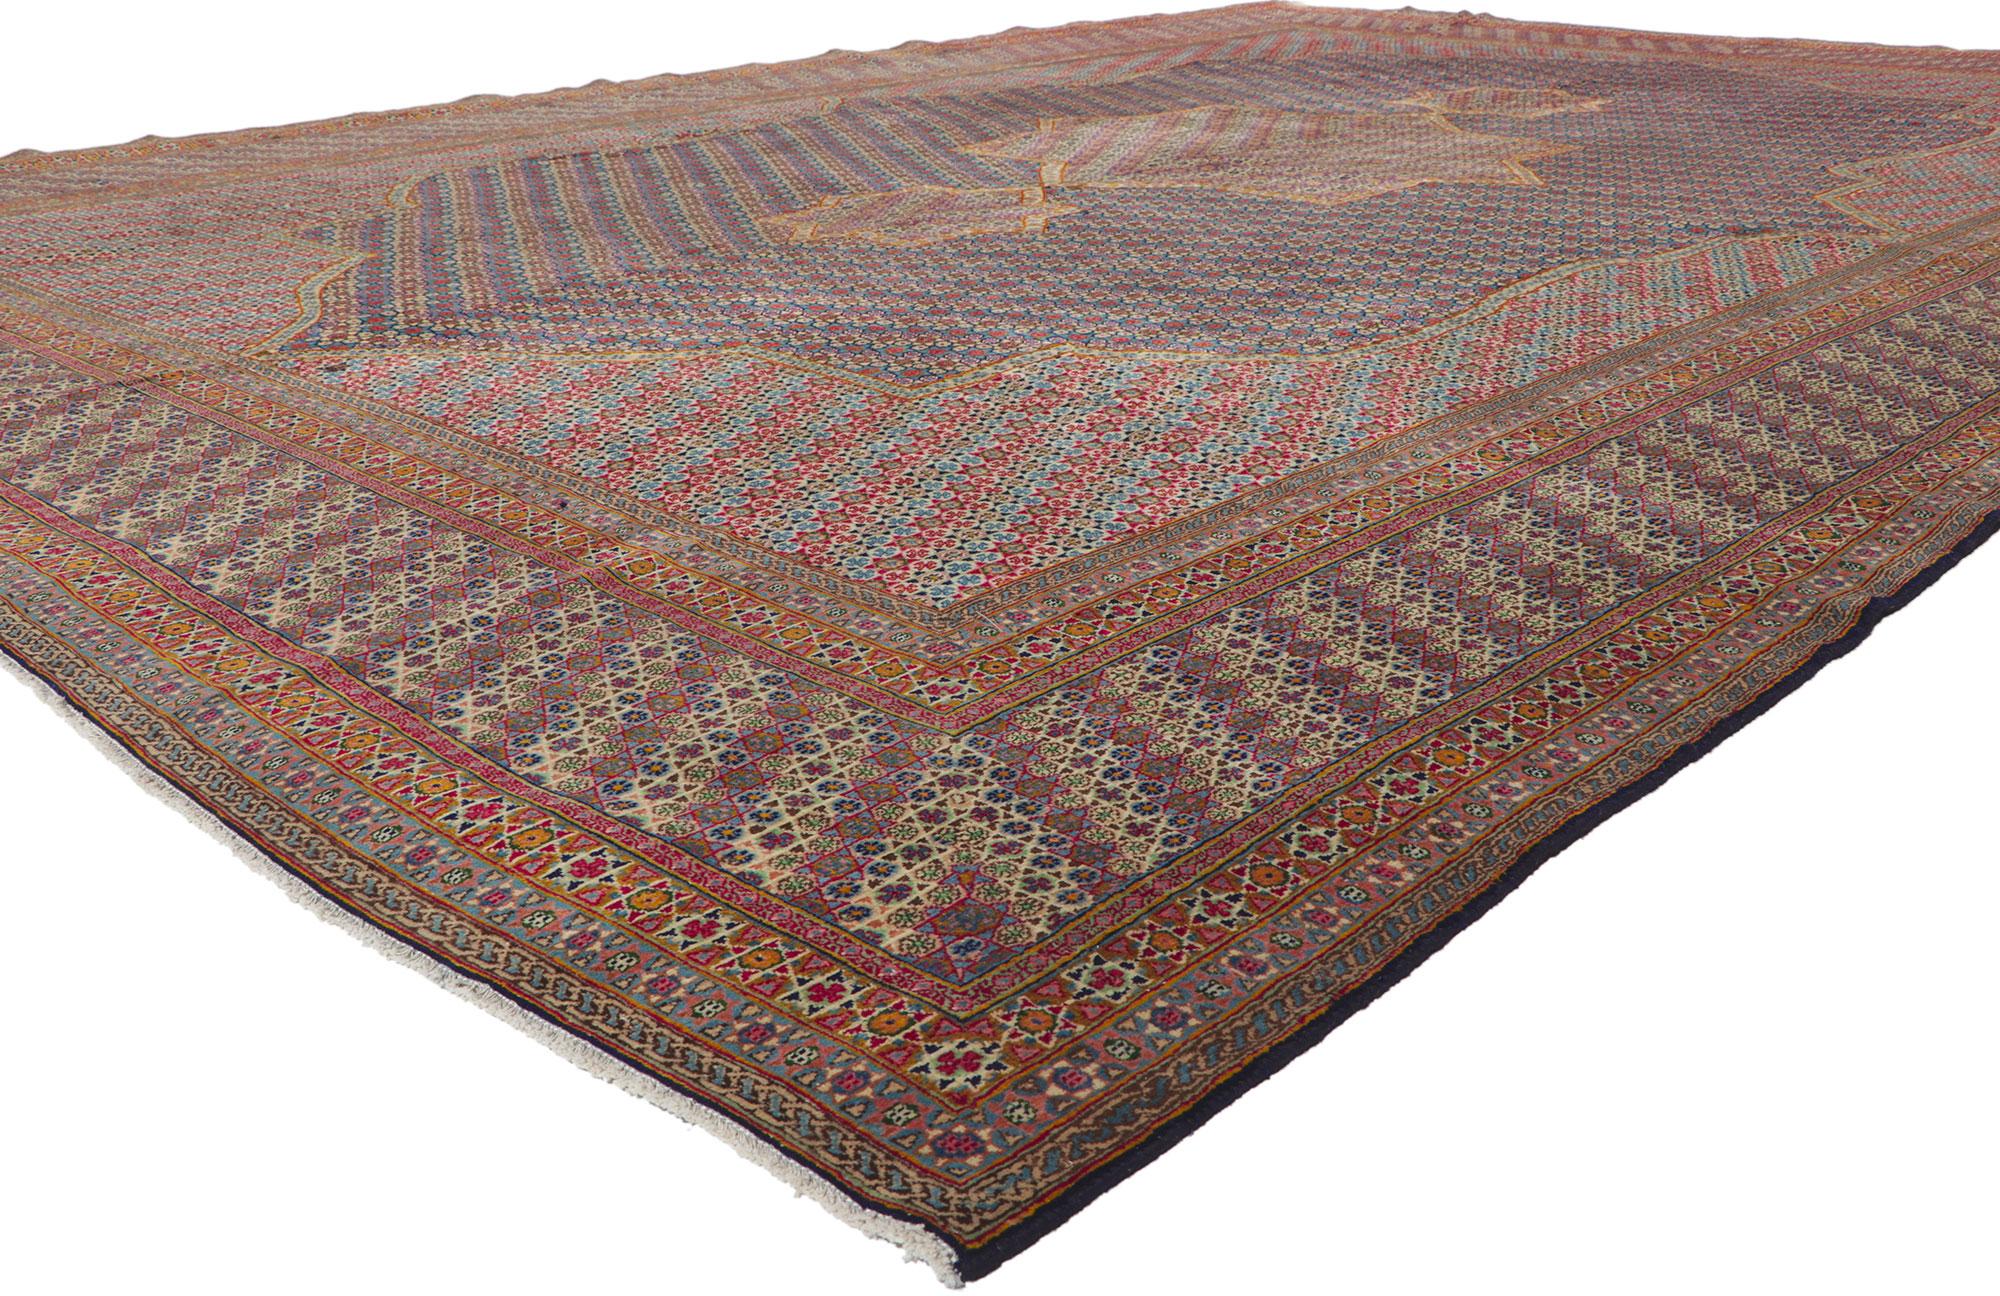 61211 Vintage Persisch Kerman Teppich, 11'06 x 16'02. Dieser handgeknüpfte persische Kerman-Teppich aus Wolle mit kunstvollen Details und ausgewogener Symmetrie ist ein echter Hingucker. Die Verzierungen im Khatamkari-Stil allein sind schon